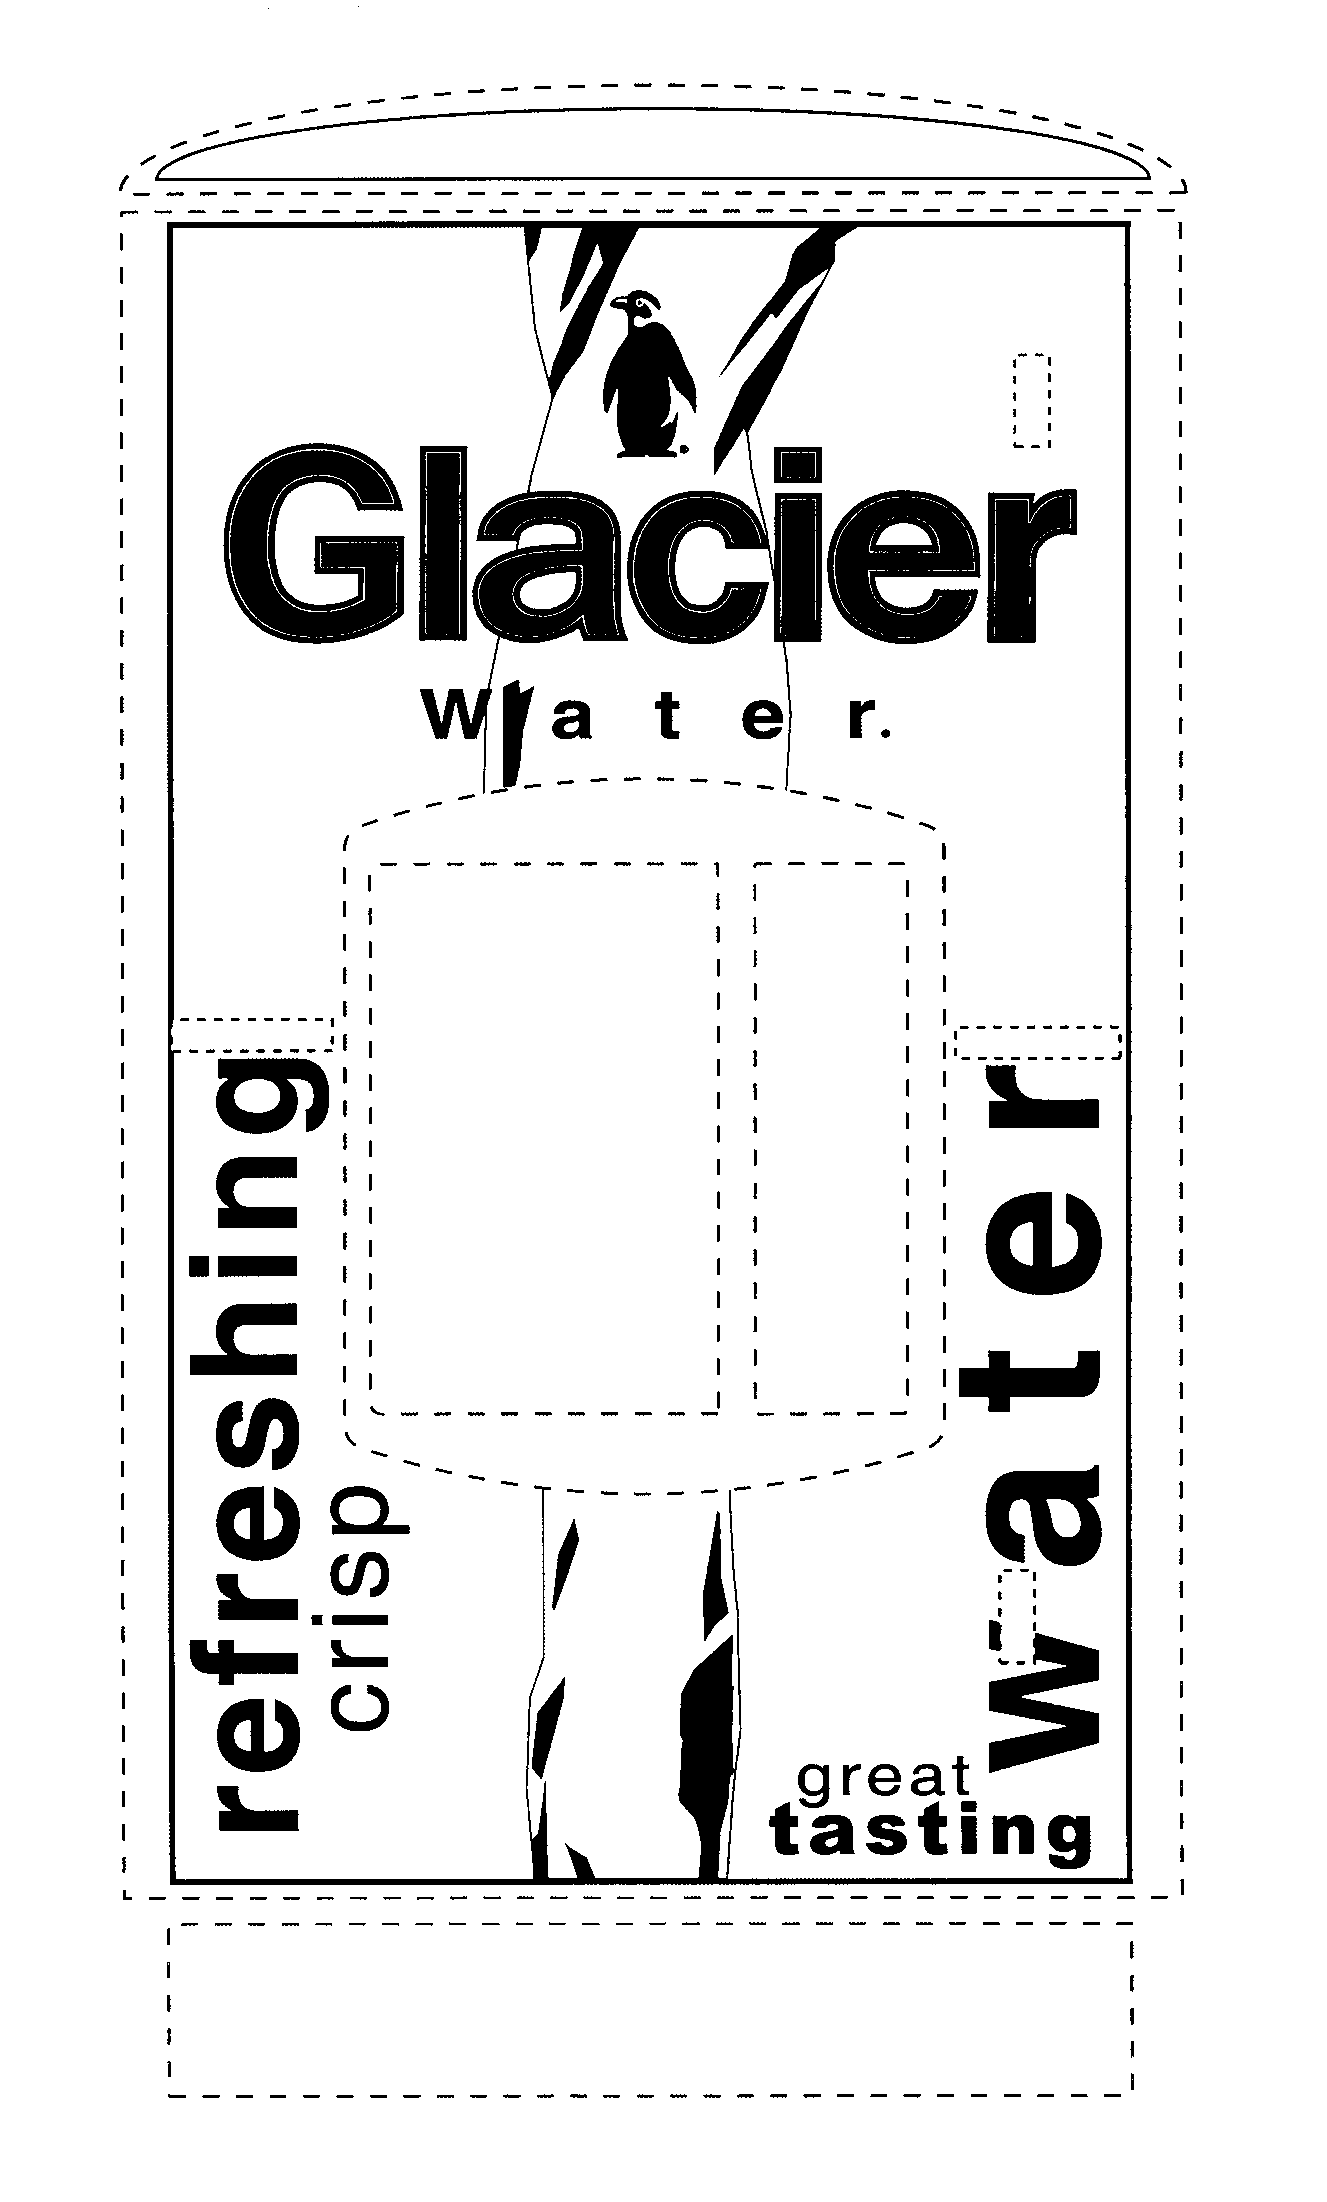  GLACIER WATER REFRESHING WATER CRISP GREAT TASTING